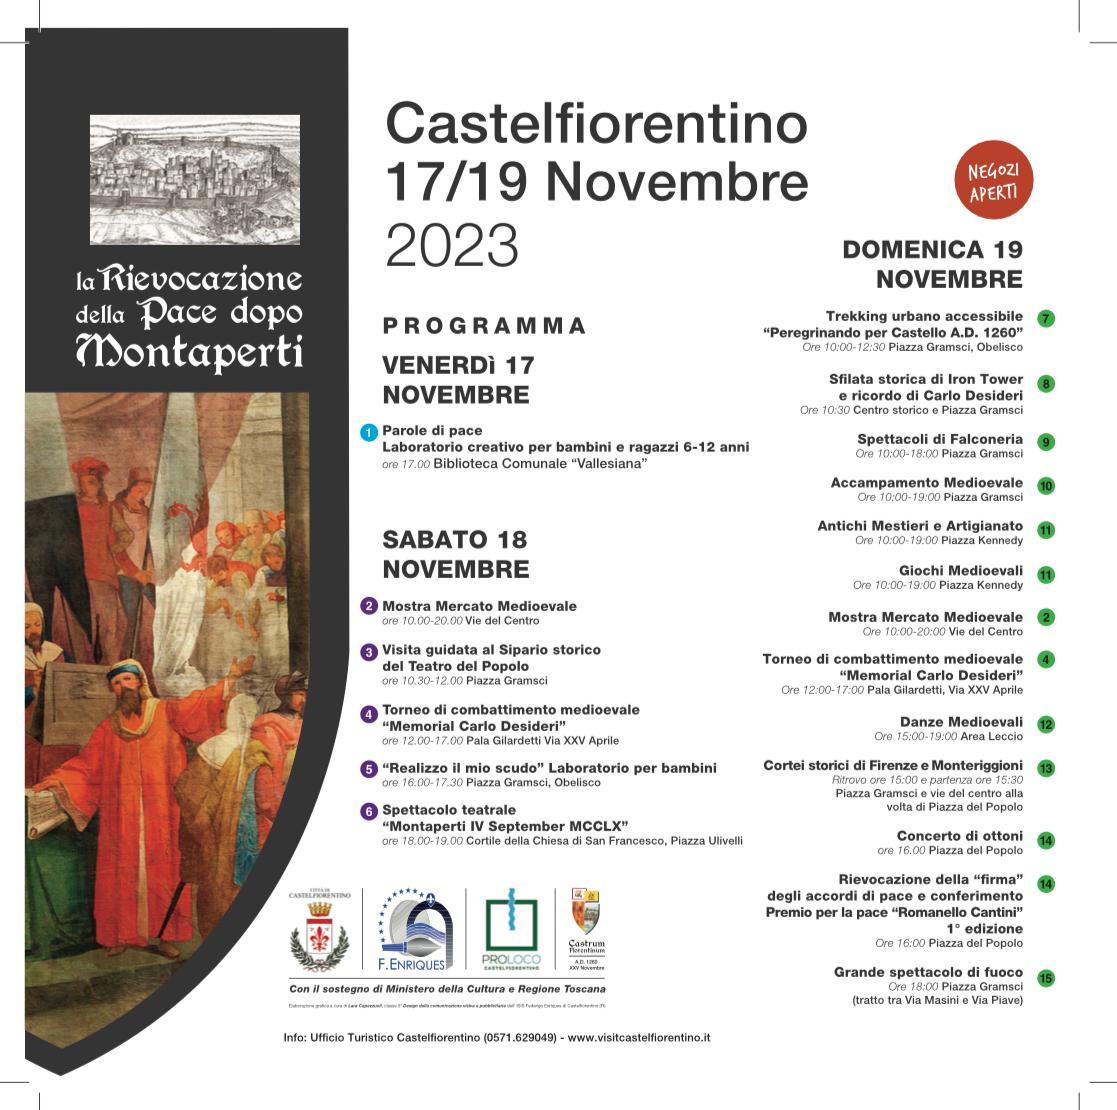 Locandina della rievocazione della pace dopo Montaperti a Castelfiorentino